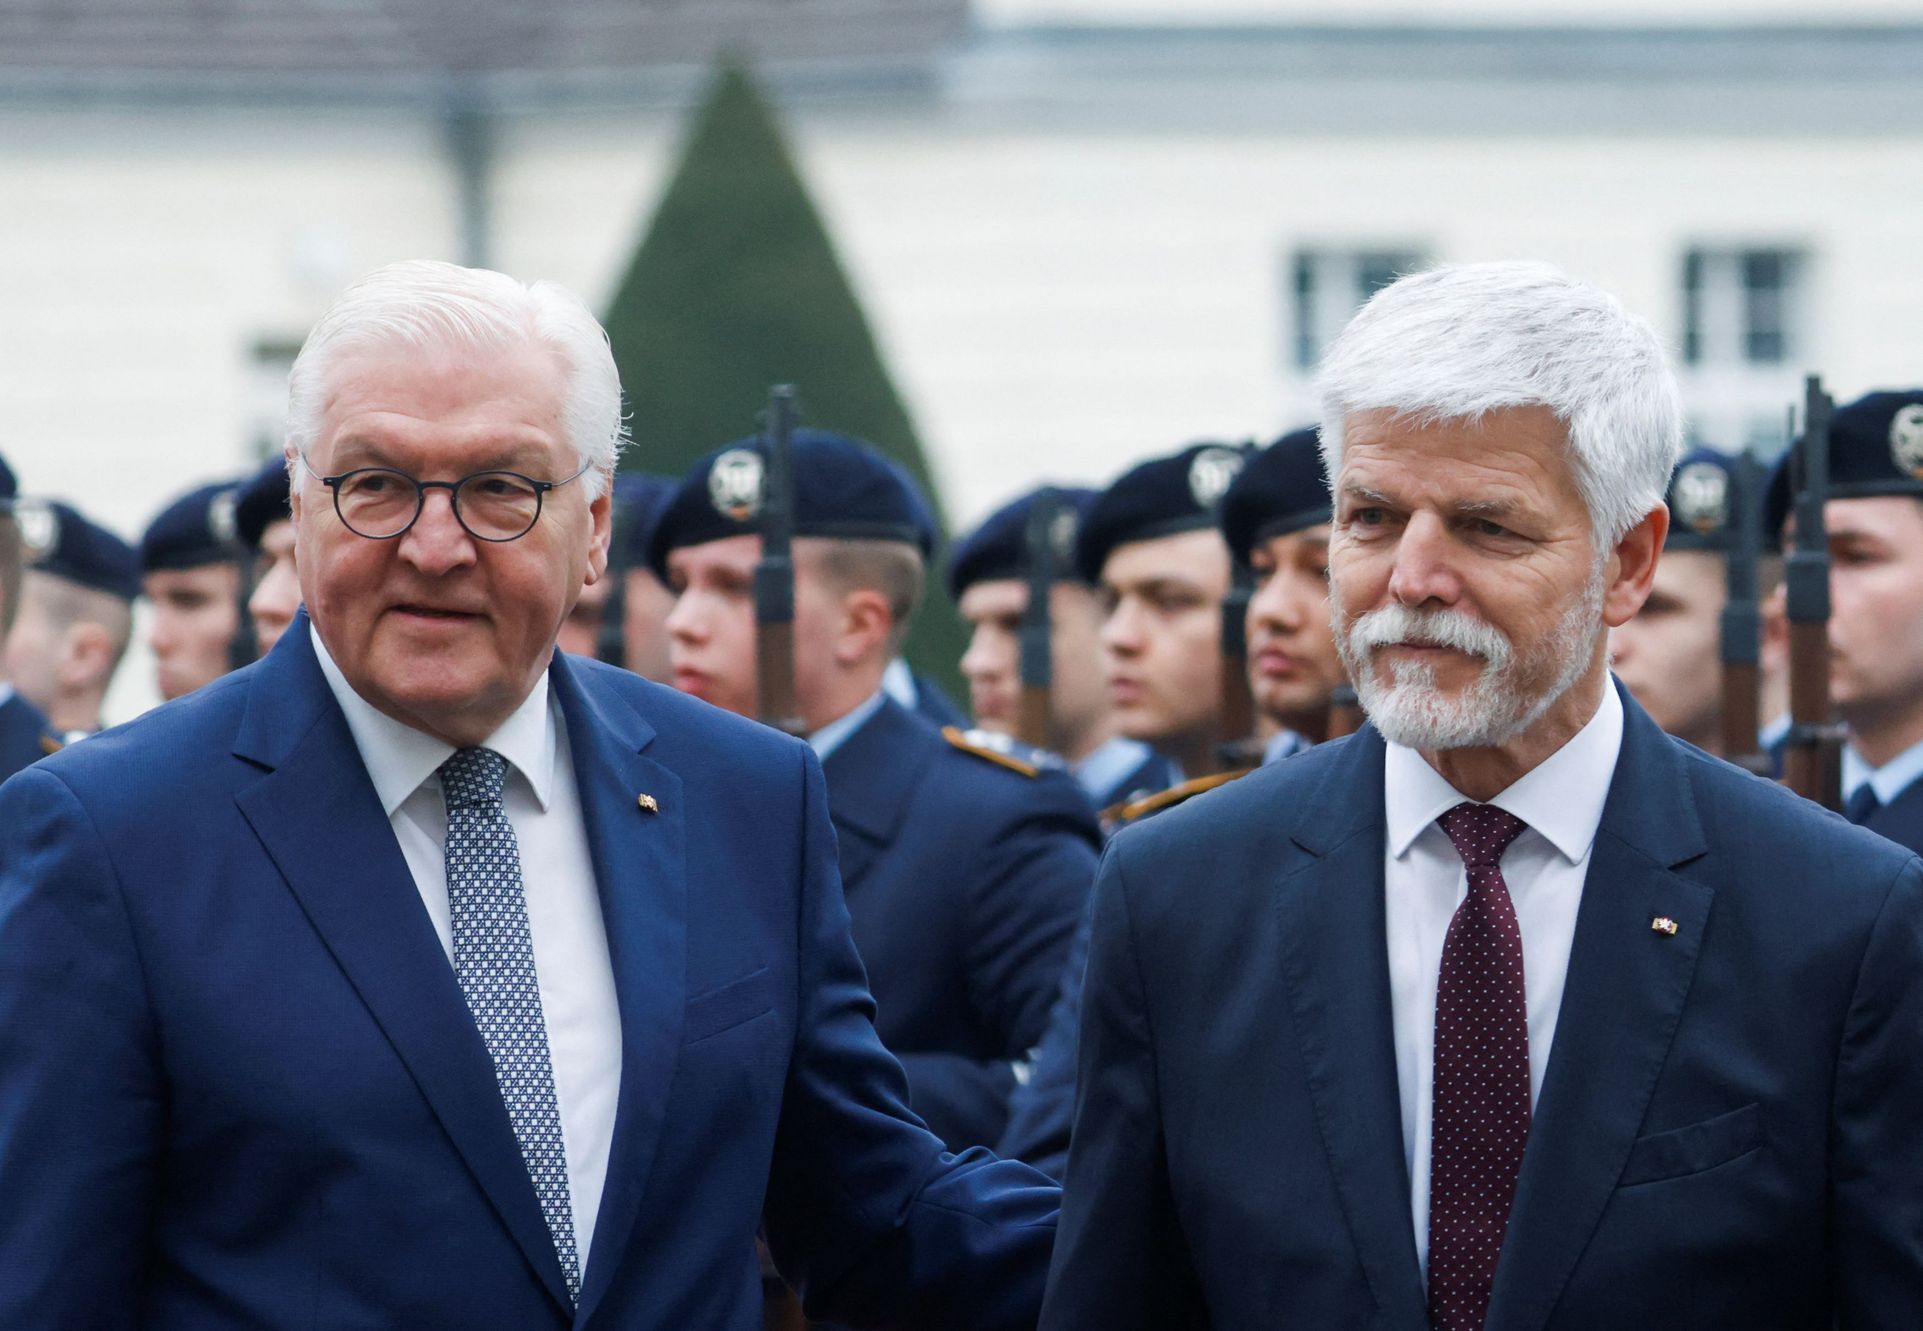 Pavel besucht weiterhin seine Nachbarn.  Bundespräsident Steinmeier begrüßte ihn in Deutschland